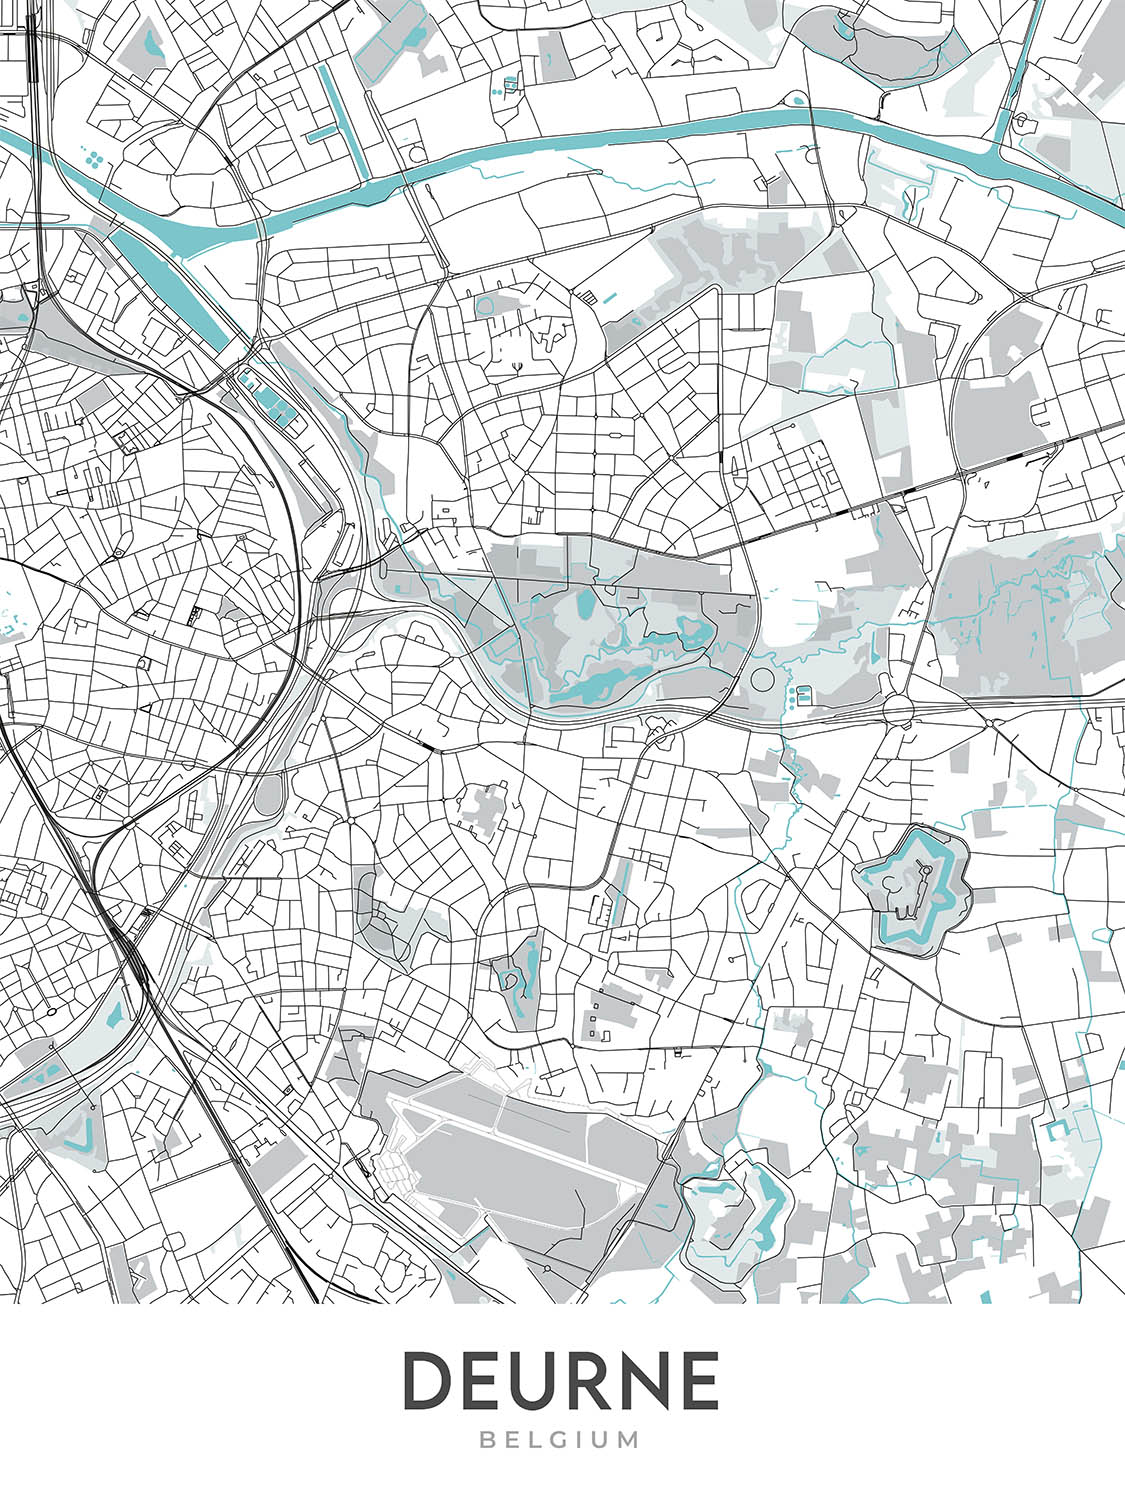 Plan de la ville moderne de Deurne, Belgique : hôtel de ville, parc Rivierenhof, complexe sportif Luchtbal, A12, N13